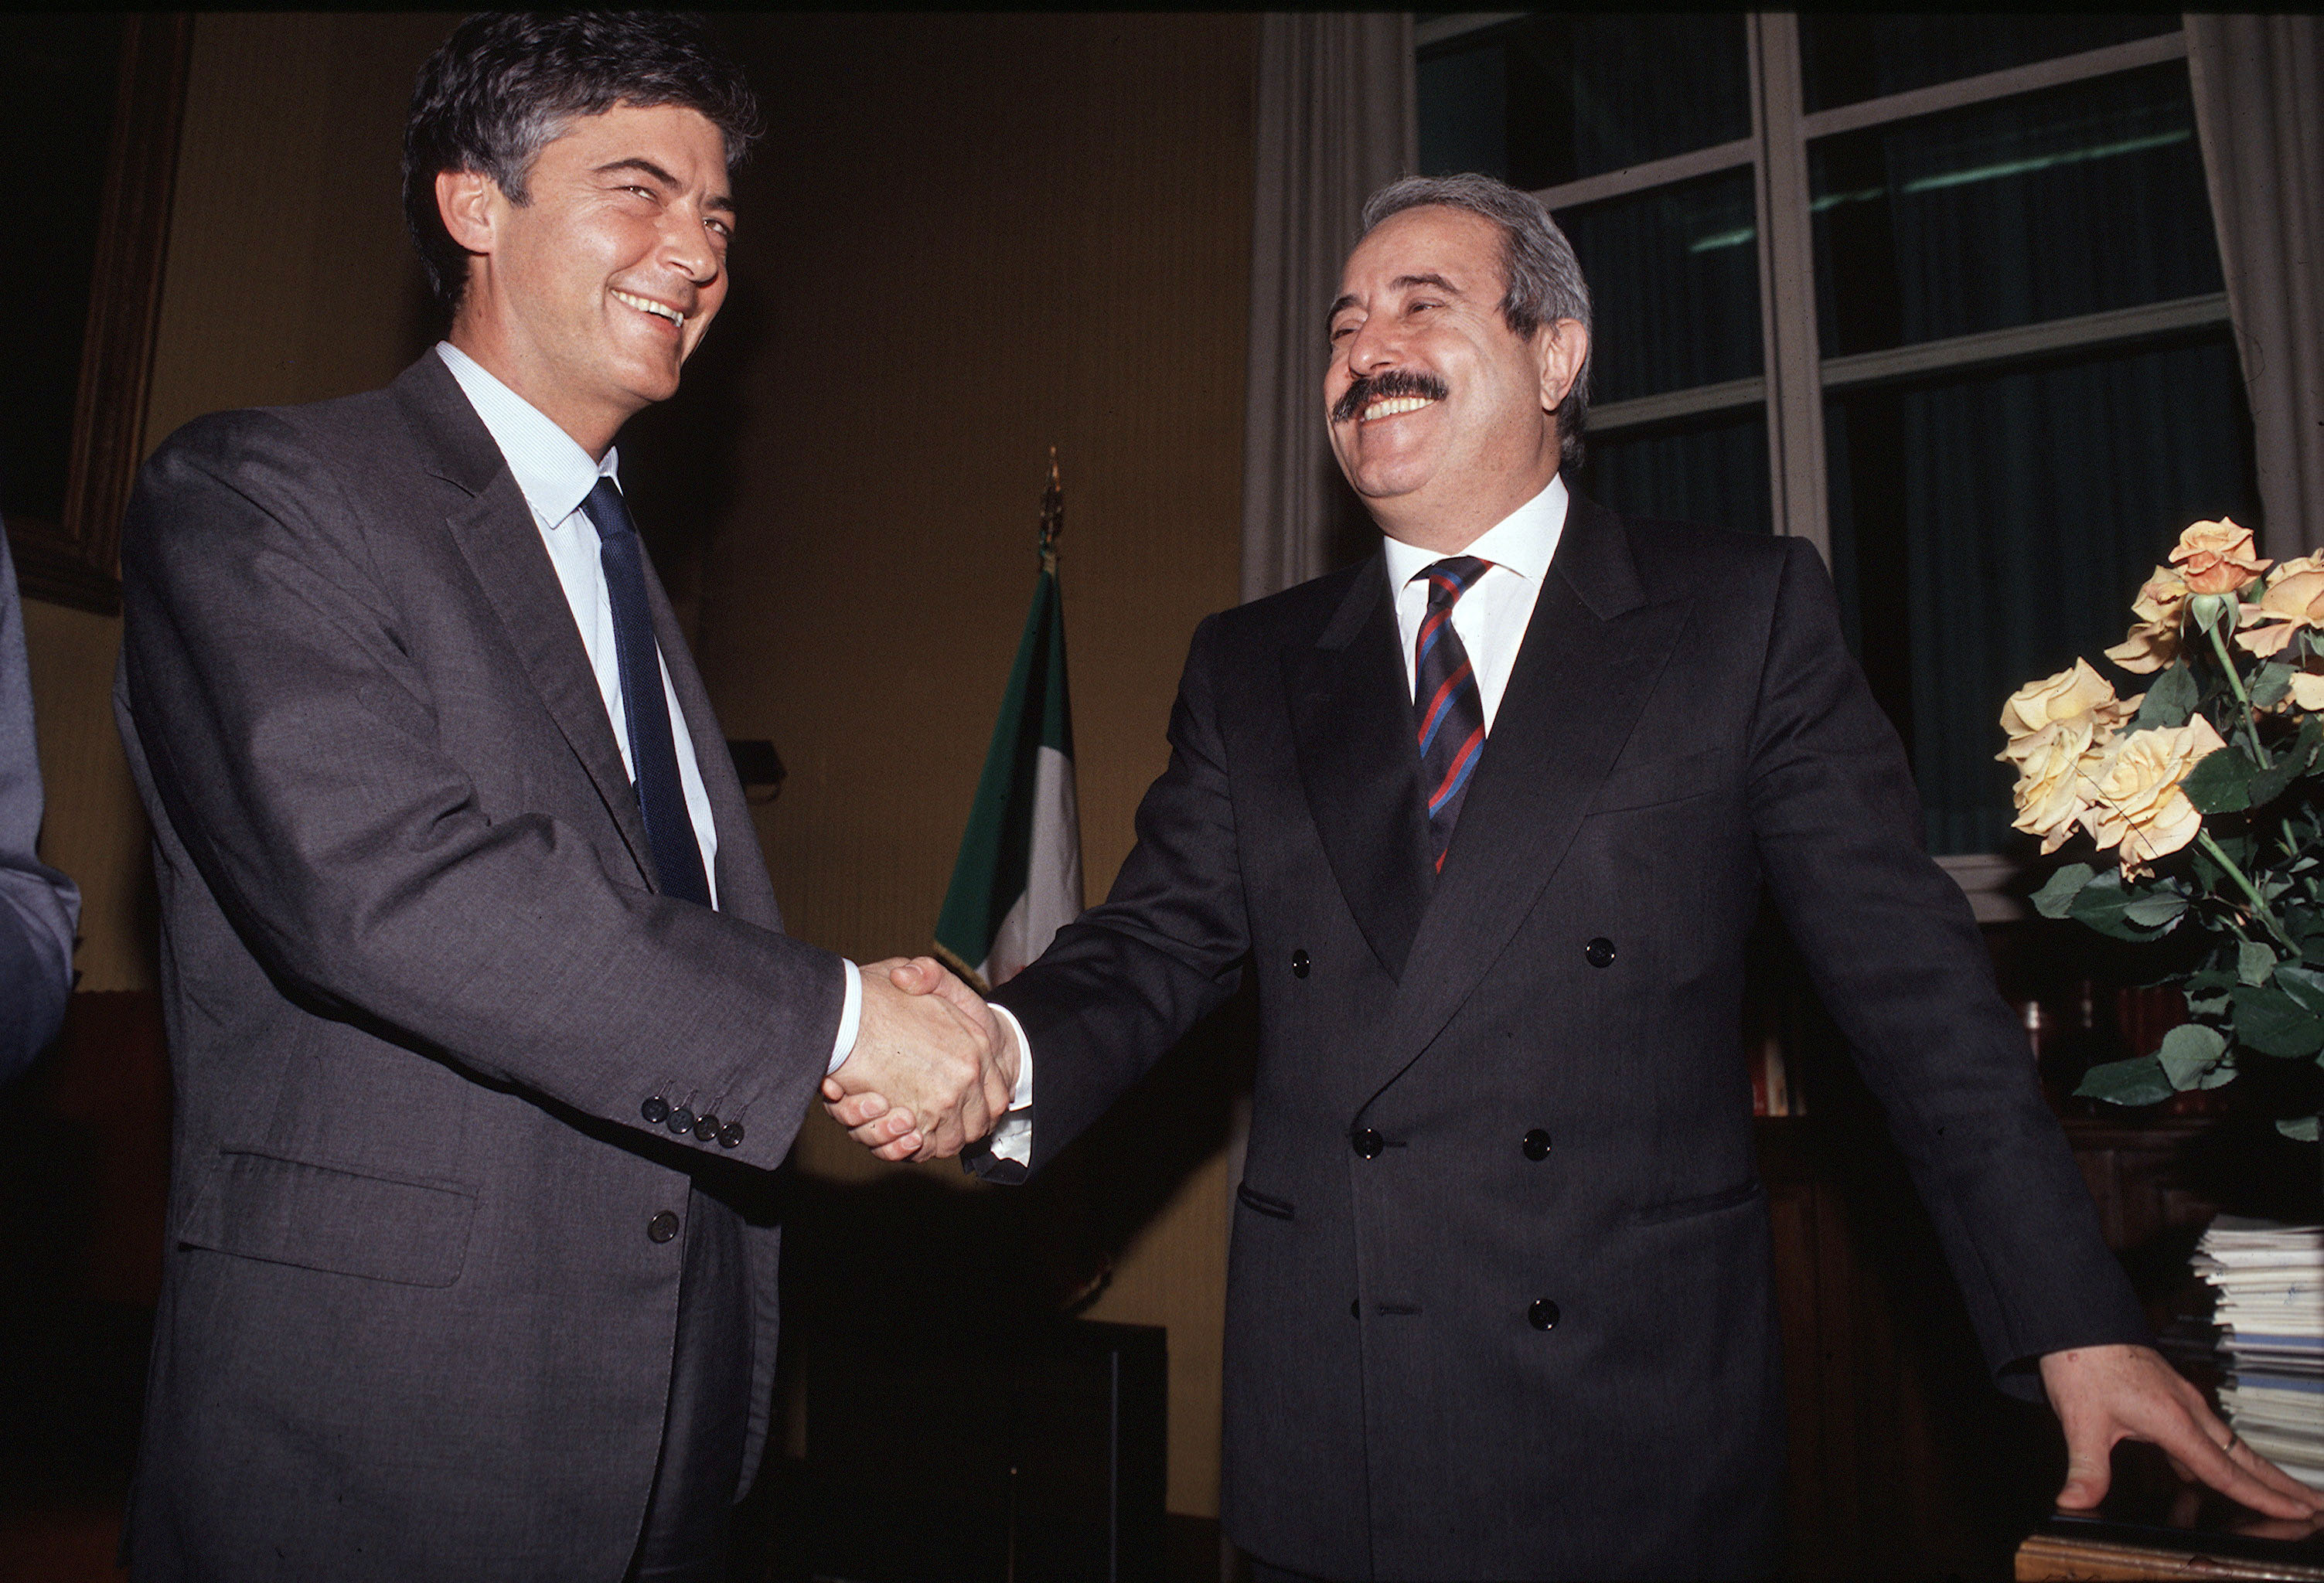 Insieme a Claudio Martelli, ministro di Grazia e Giustizia, che lo nomina nel marzo 1991 direttore generale degli affari penali presso il ministero di Grazia e Giustizia